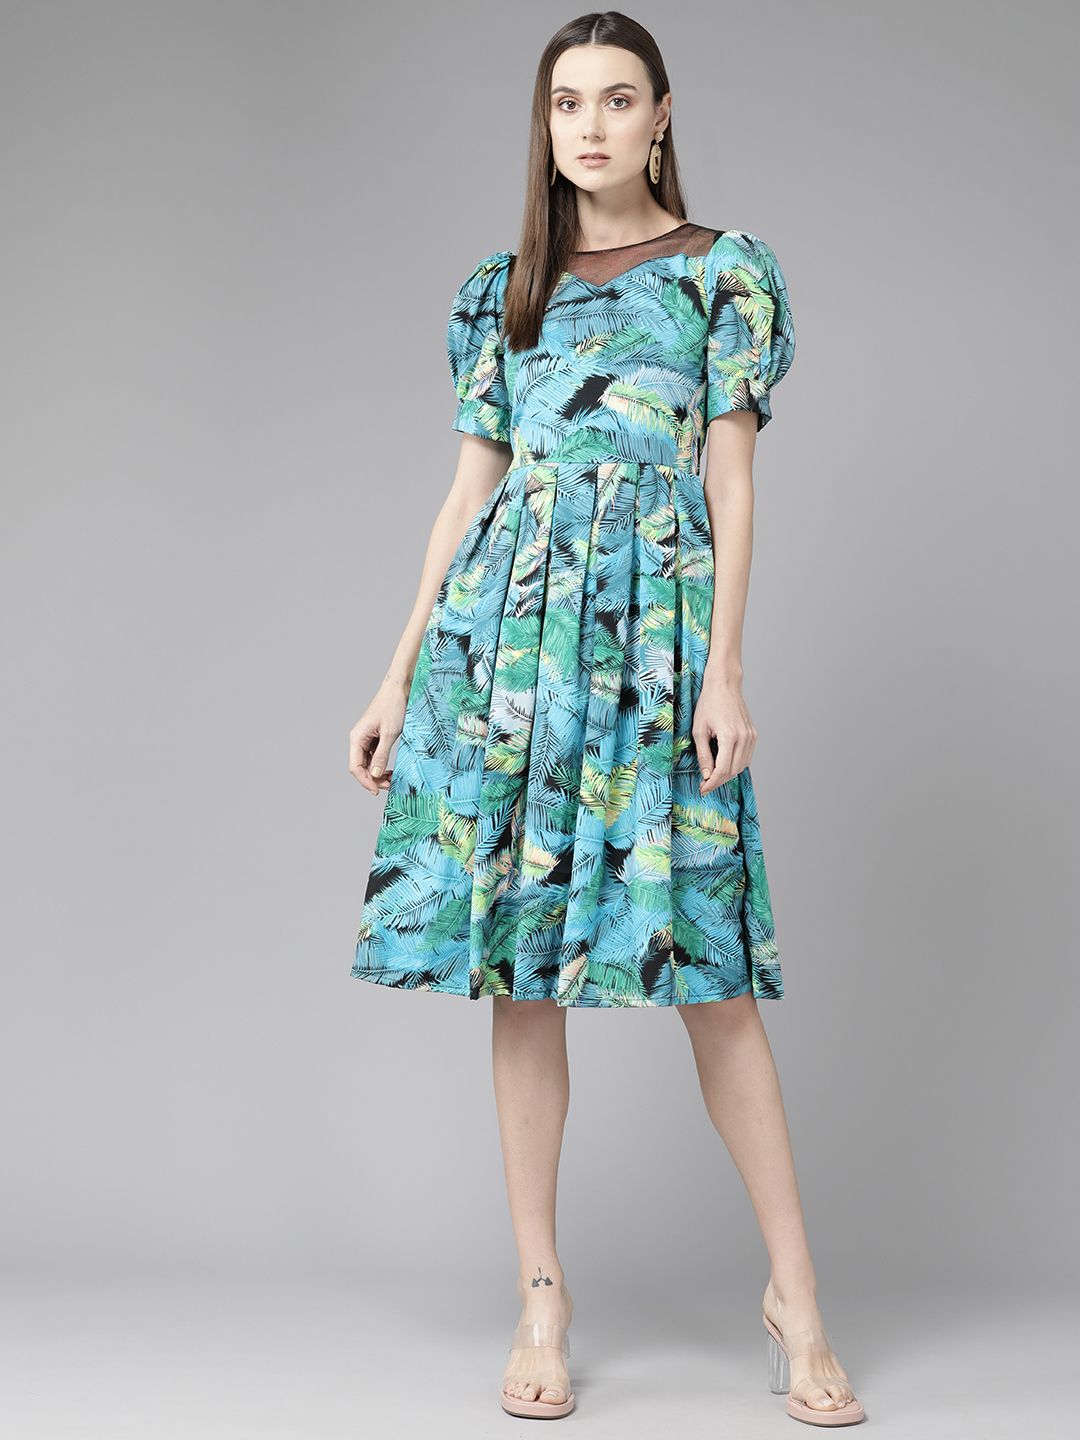 Aarika Floral Print Puff Sleeve Georgette A-Line Dress Price in India